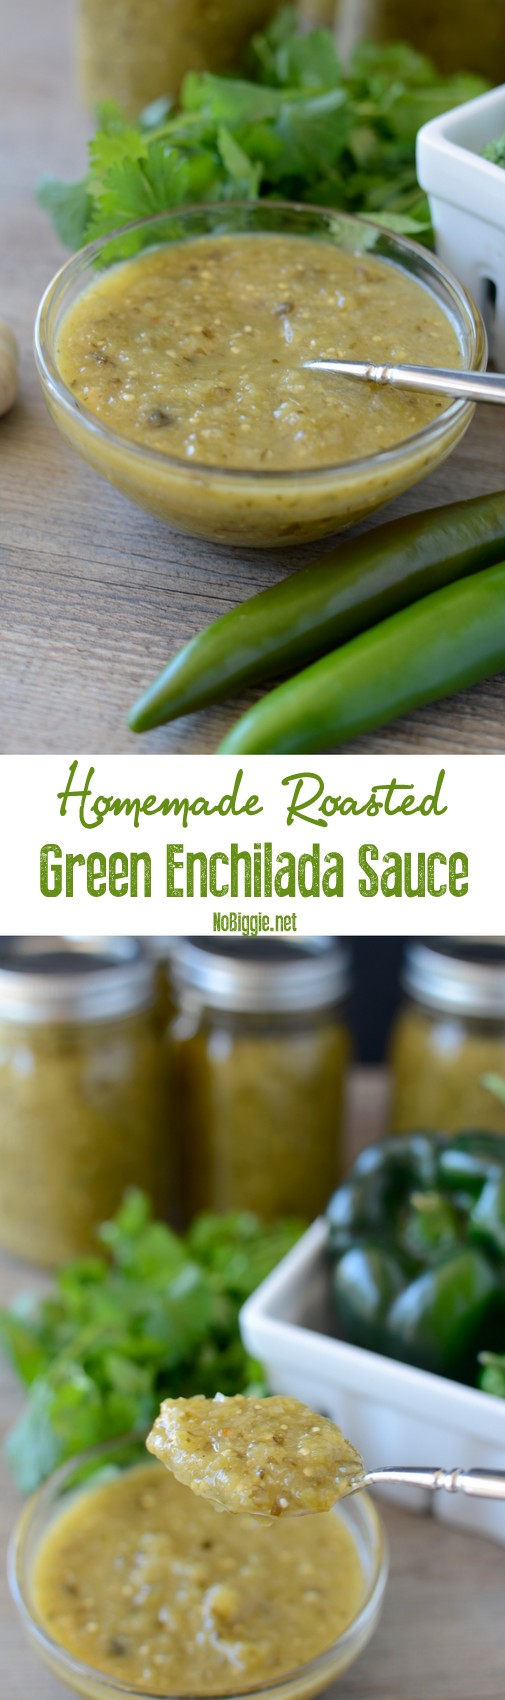 Homemade Roasted Green Enchilada Sauce